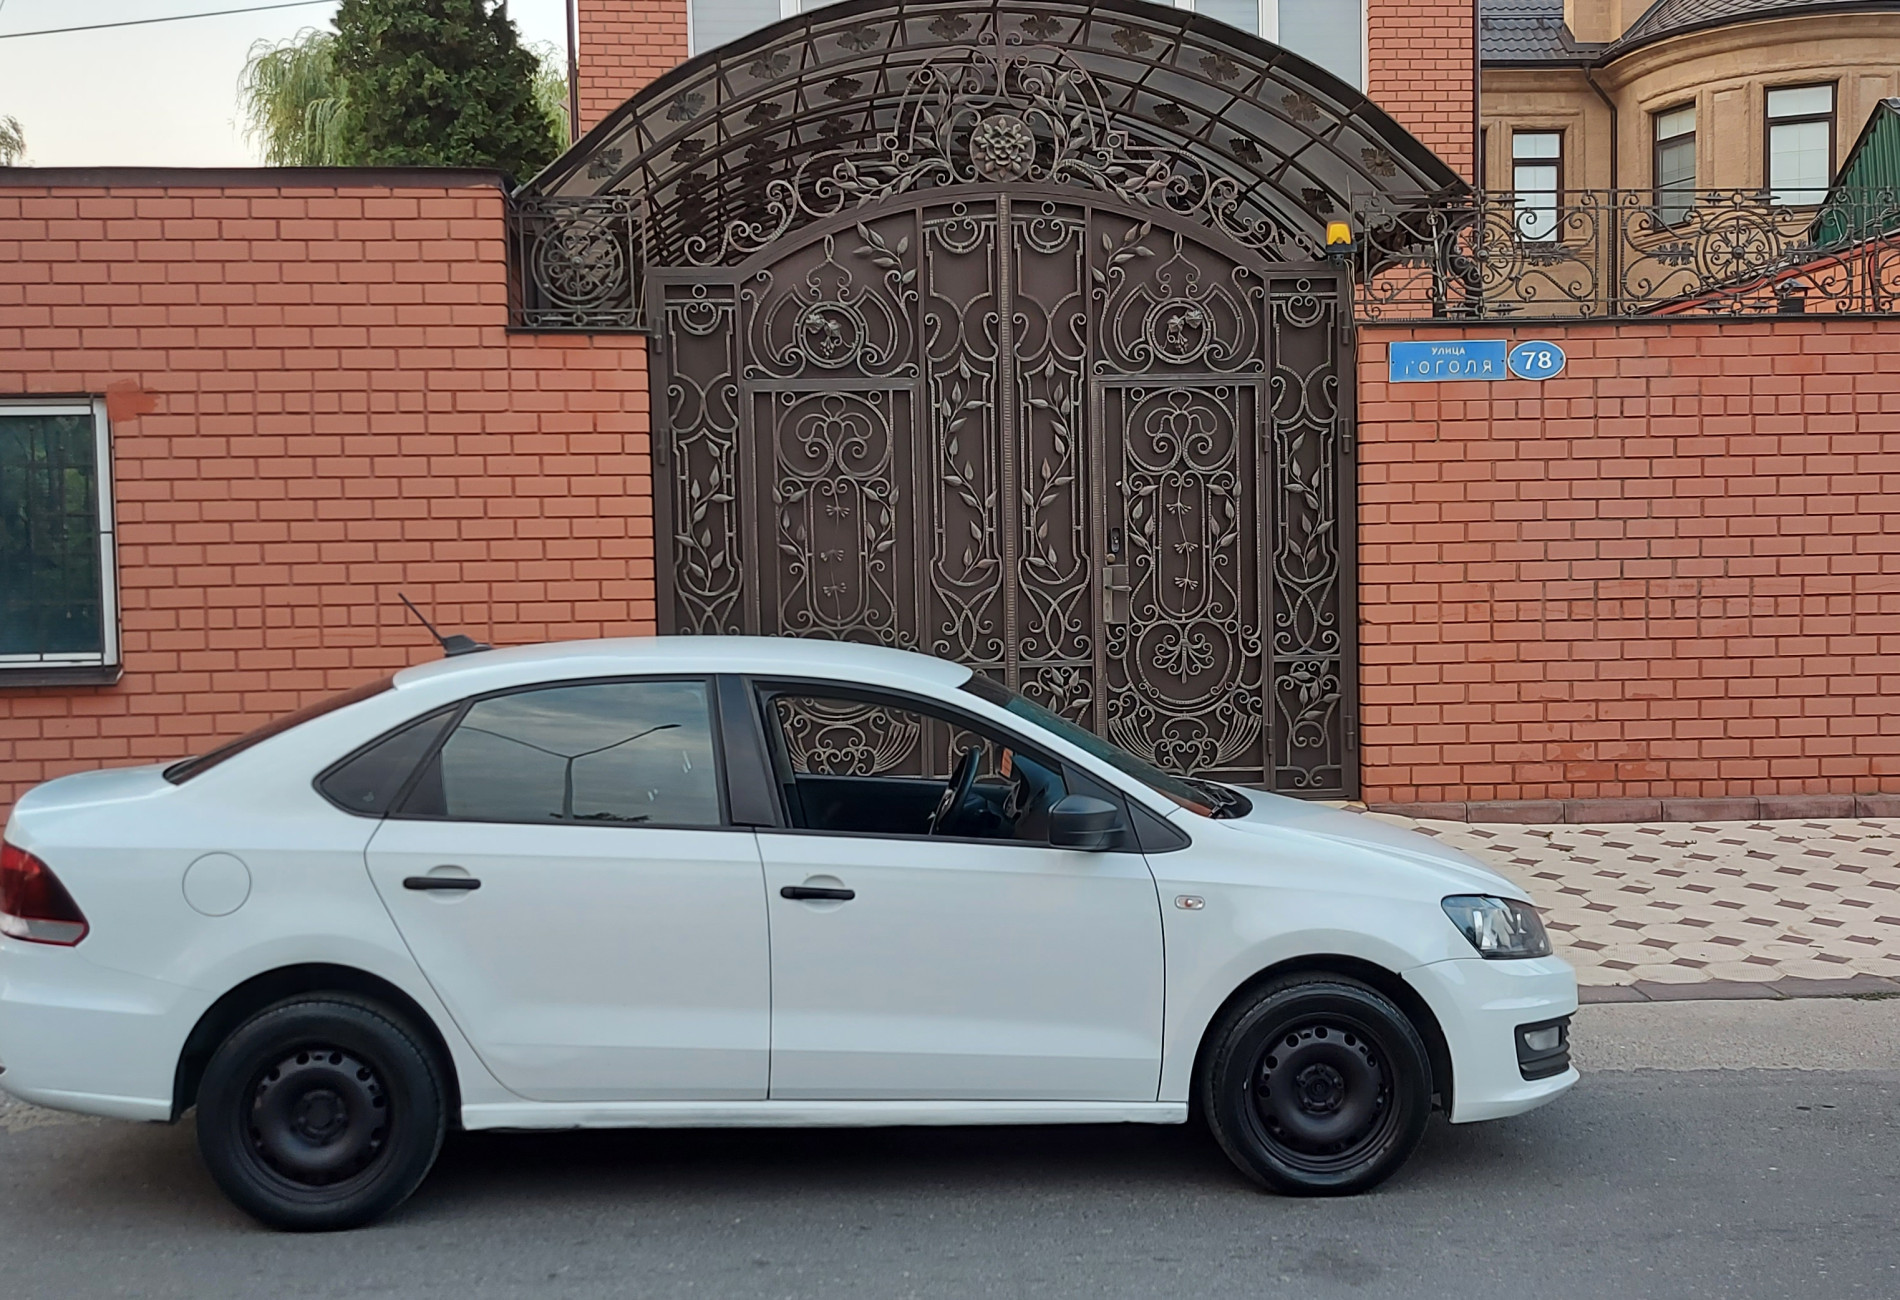 Аренда volkswagen polo эконом класса 2019 года в городе Москва от 2800 руб./сутки, передний привод, двигатель: бензин, объем 1.6 литров, ОСАГО (Мультидрайв), без водителя, недорого, вид 6 - RentRide